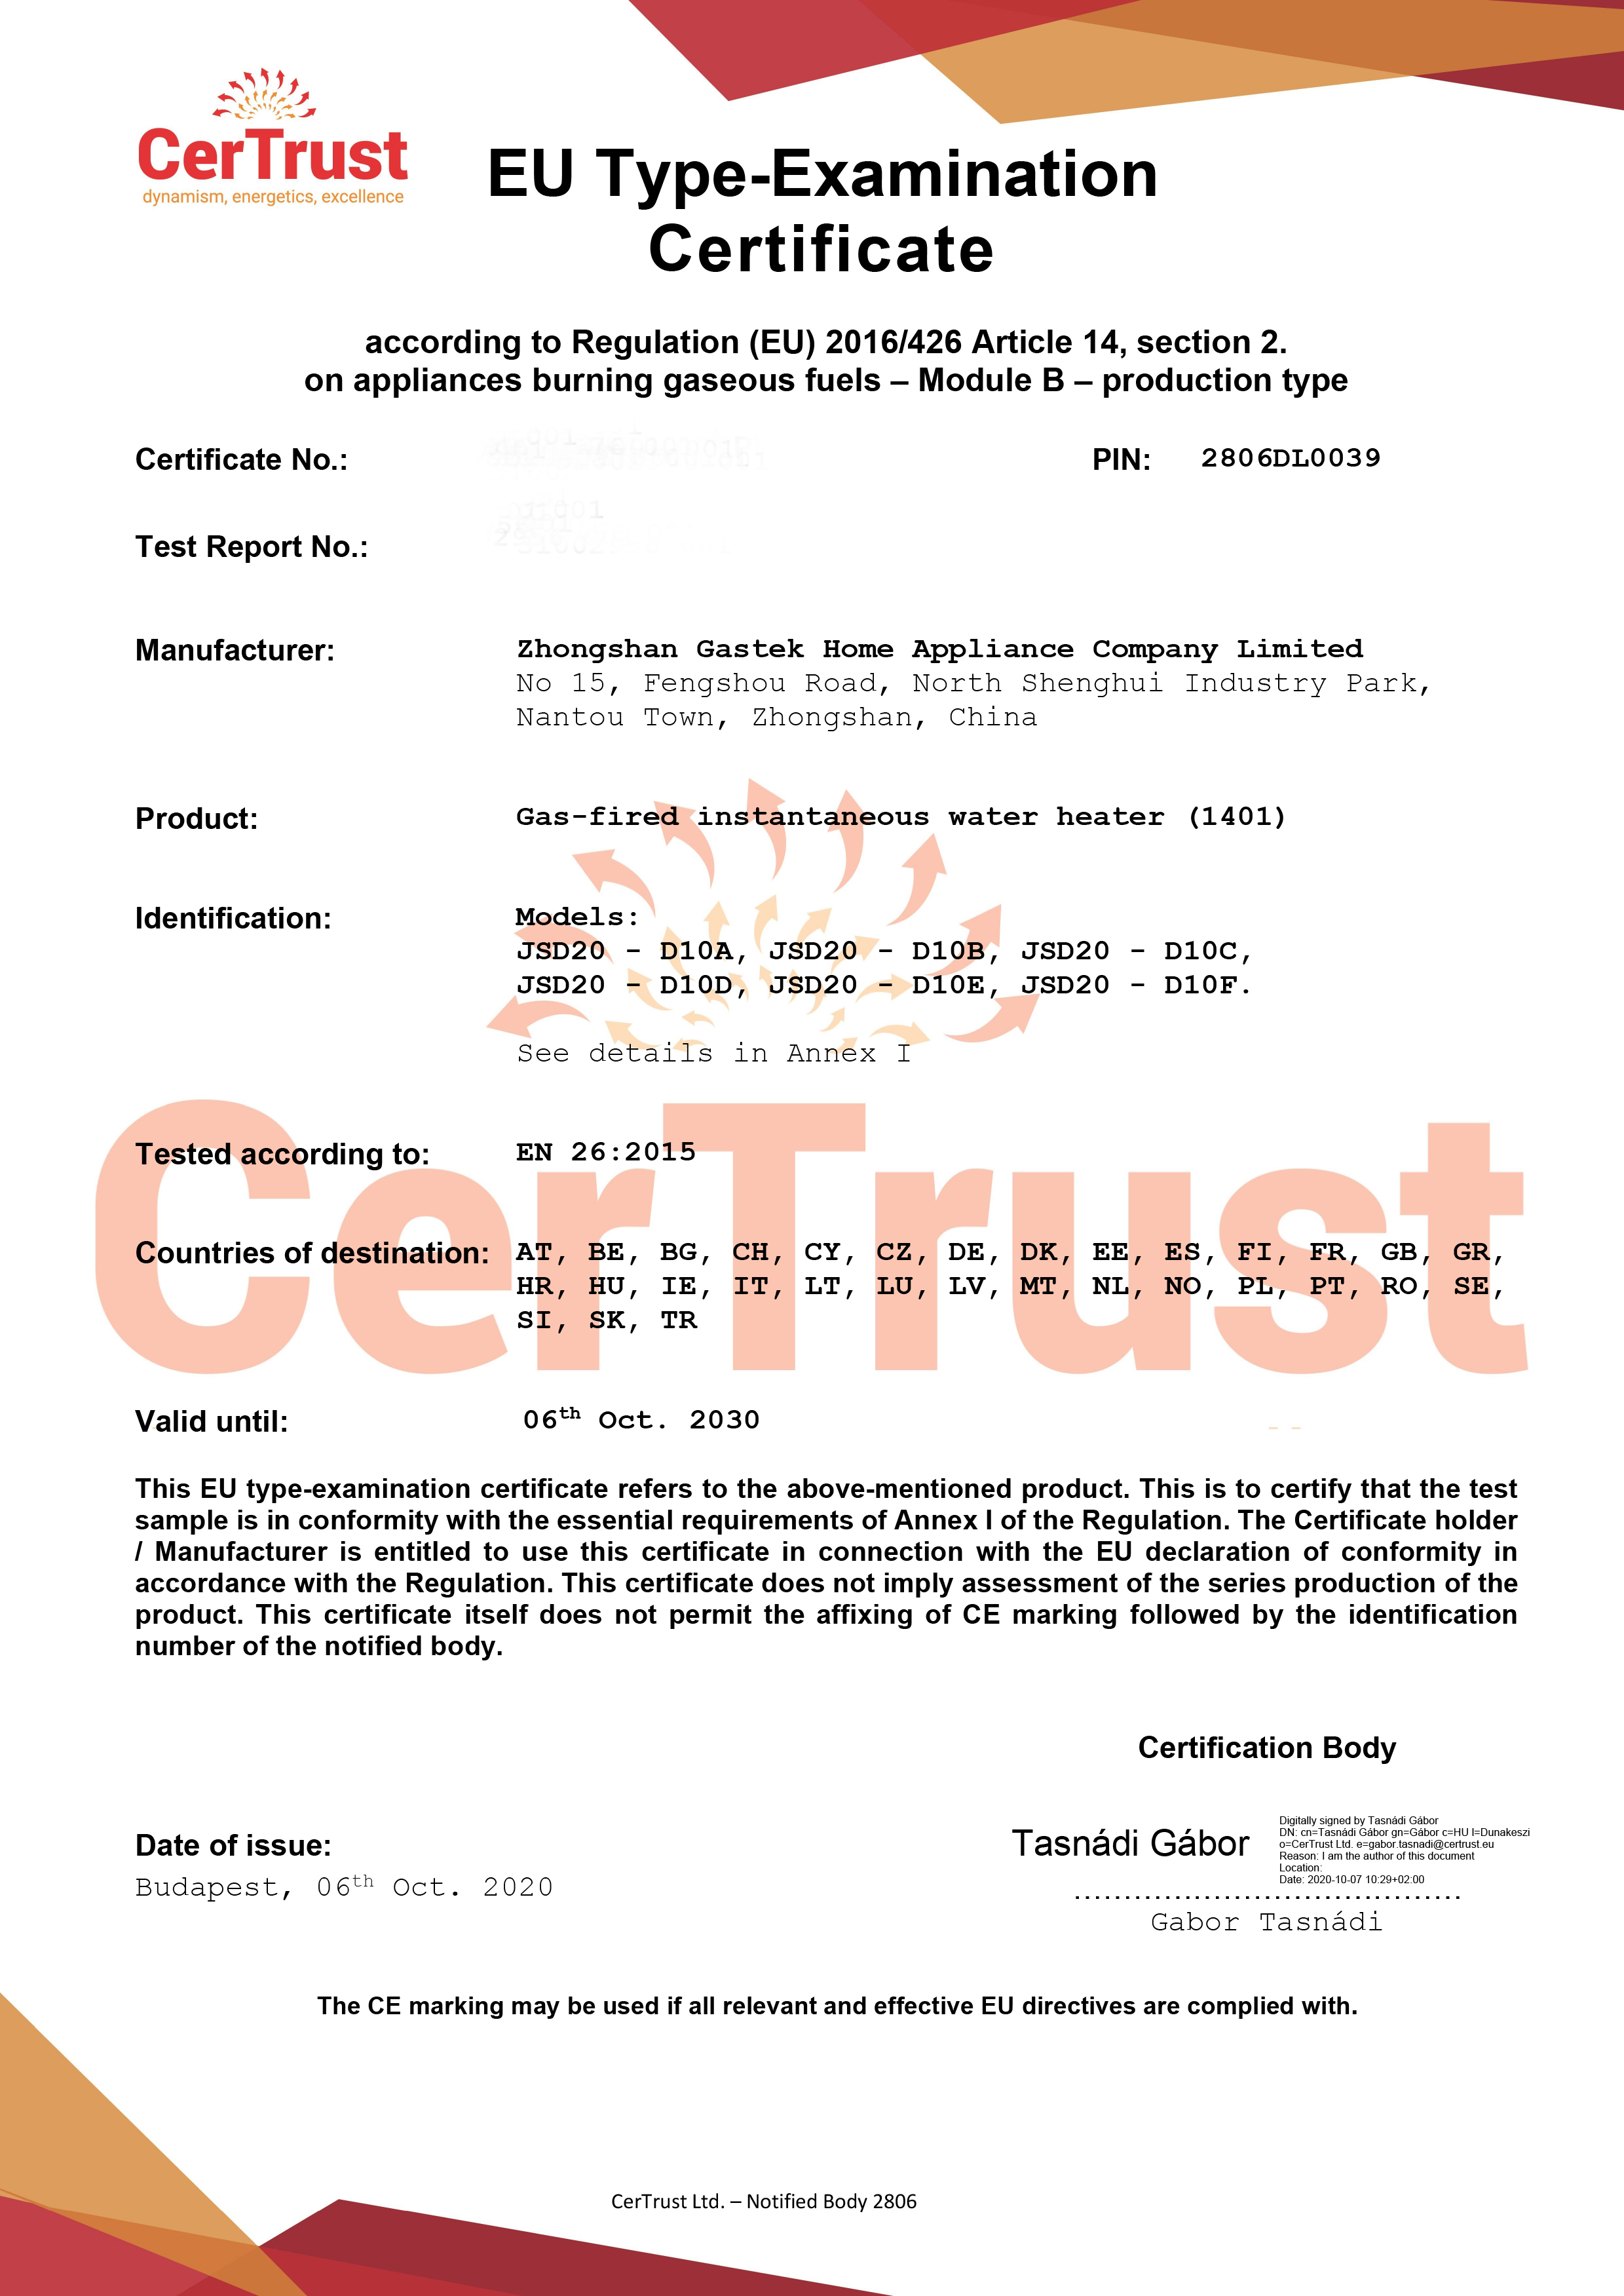 Gastek kreeg in oktober het CE-certificaat van gasboiler